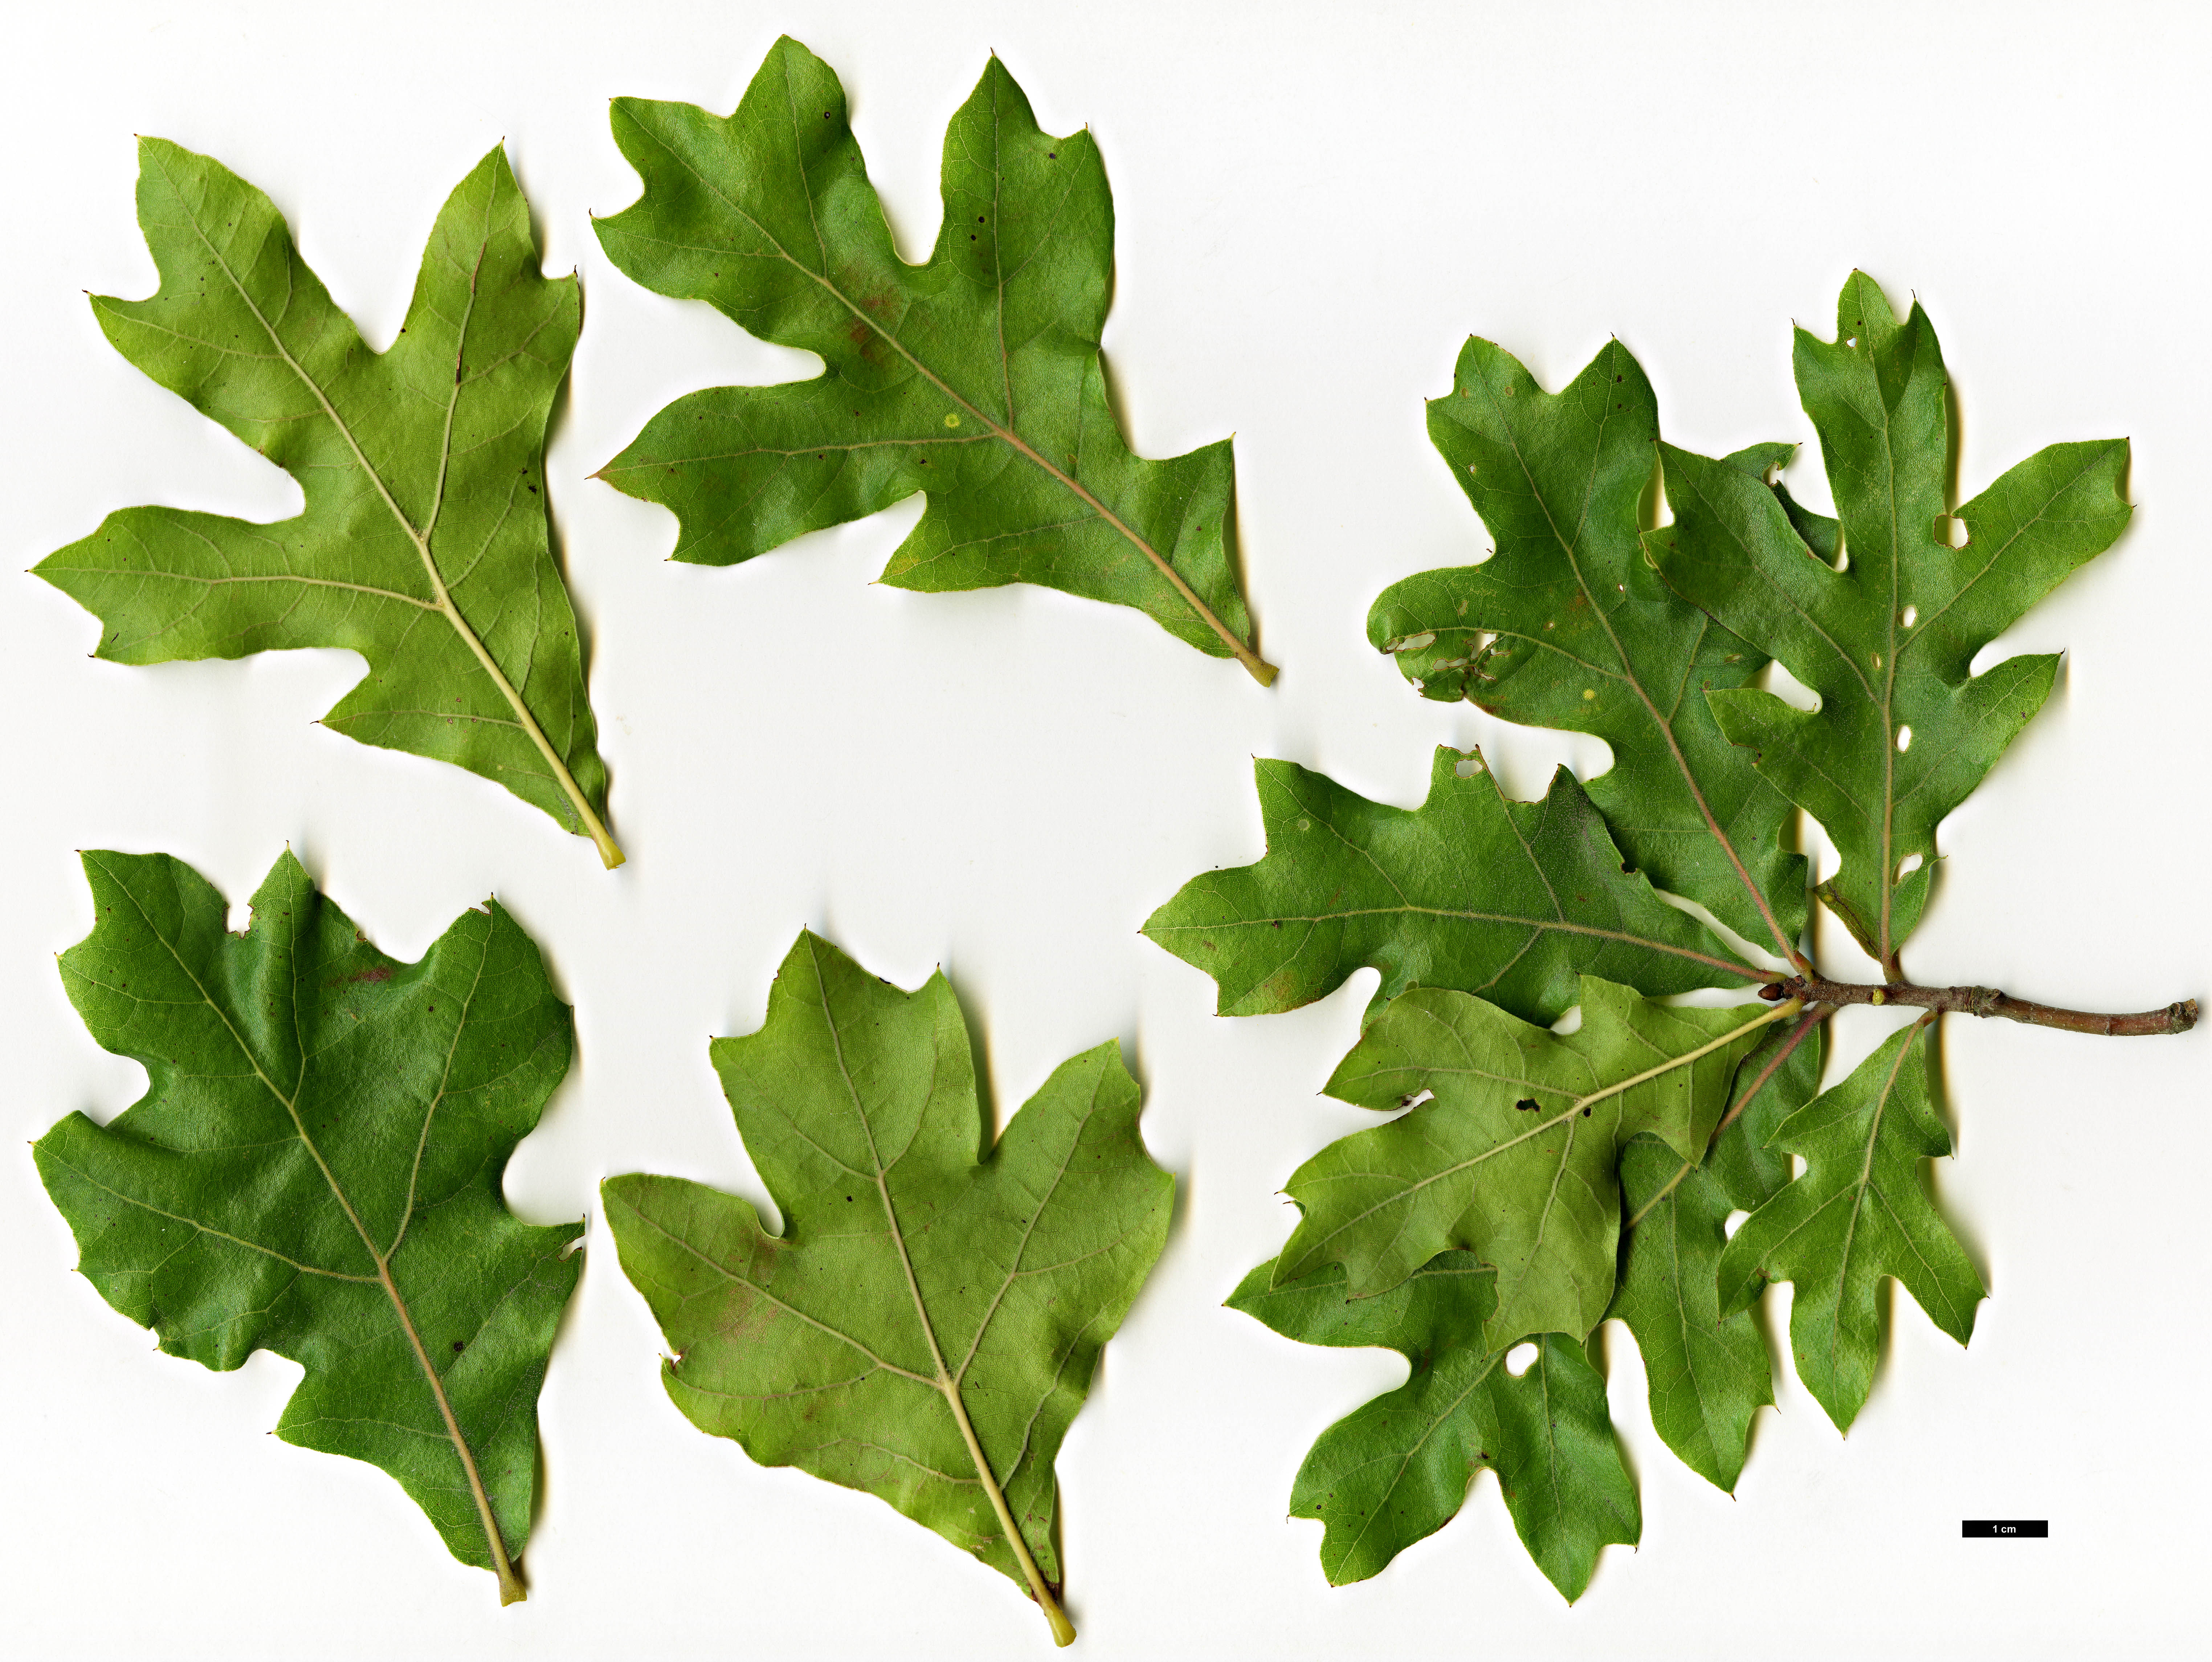 High resolution image: Family: Fagaceae - Genus: Quercus - Taxon: marilandica - SpeciesSub: var. ashei